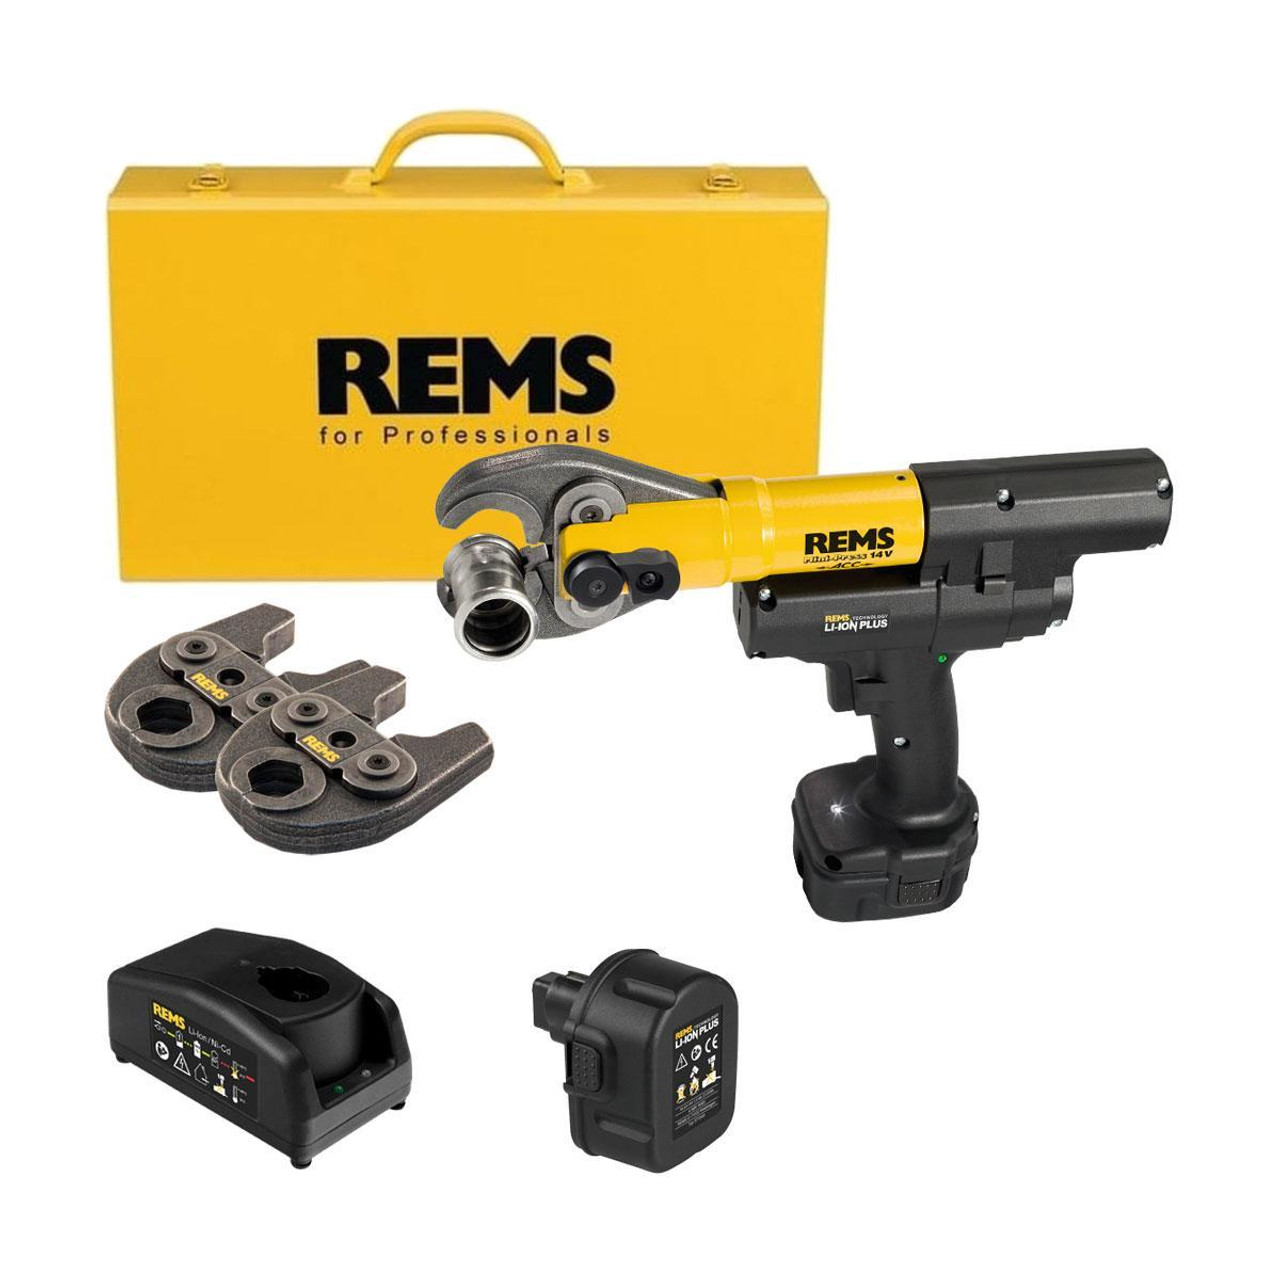 REMS Minipress Operations Manual